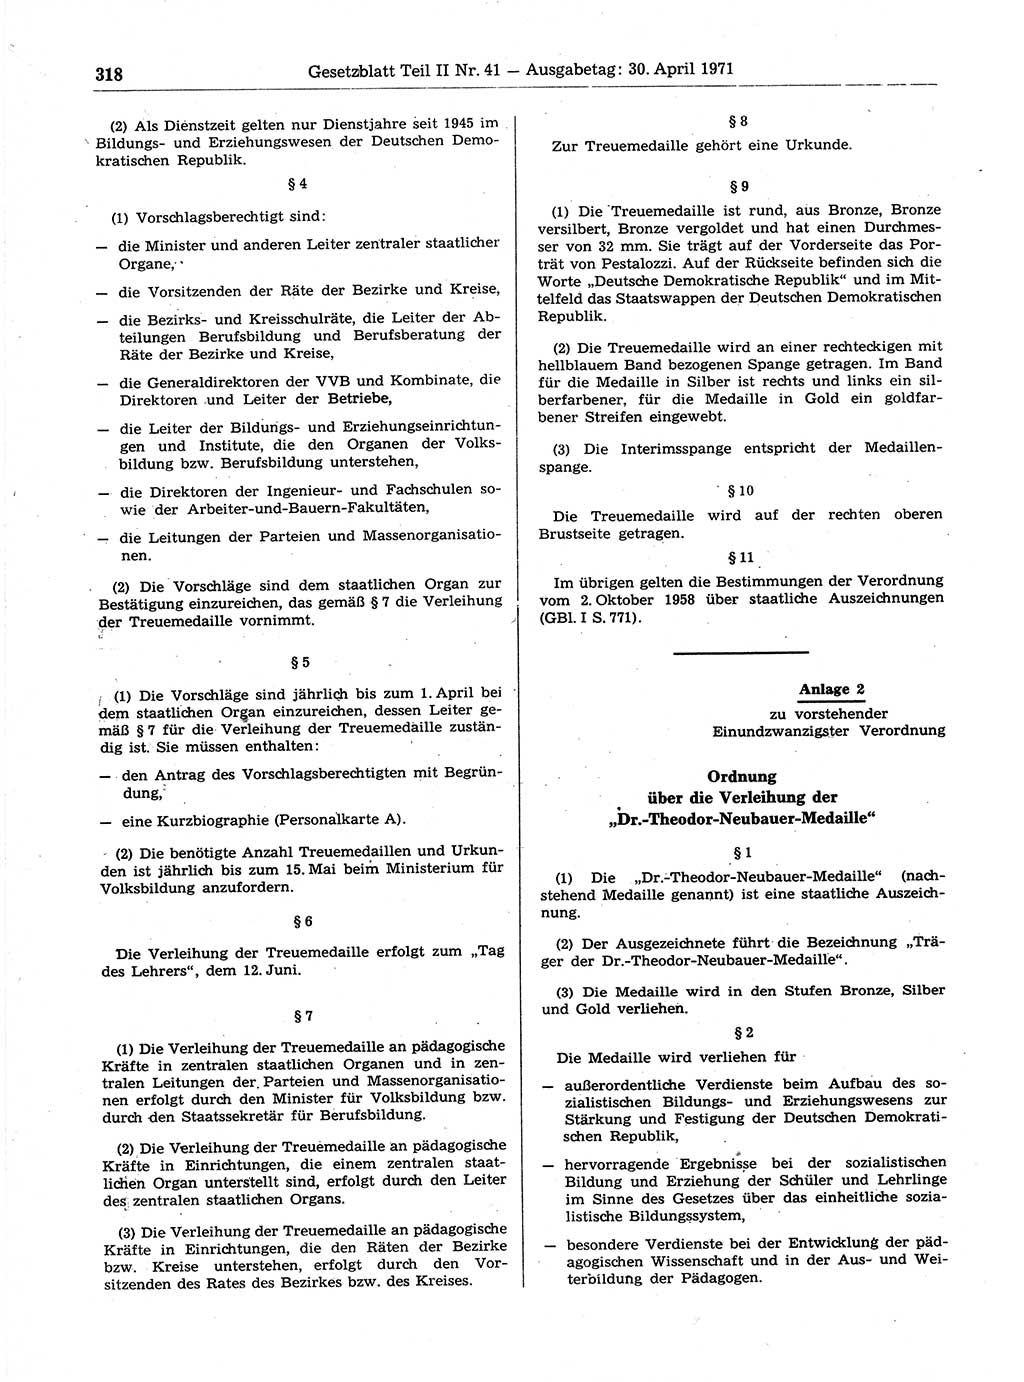 Gesetzblatt (GBl.) der Deutschen Demokratischen Republik (DDR) Teil ⅠⅠ 1971, Seite 318 (GBl. DDR ⅠⅠ 1971, S. 318)